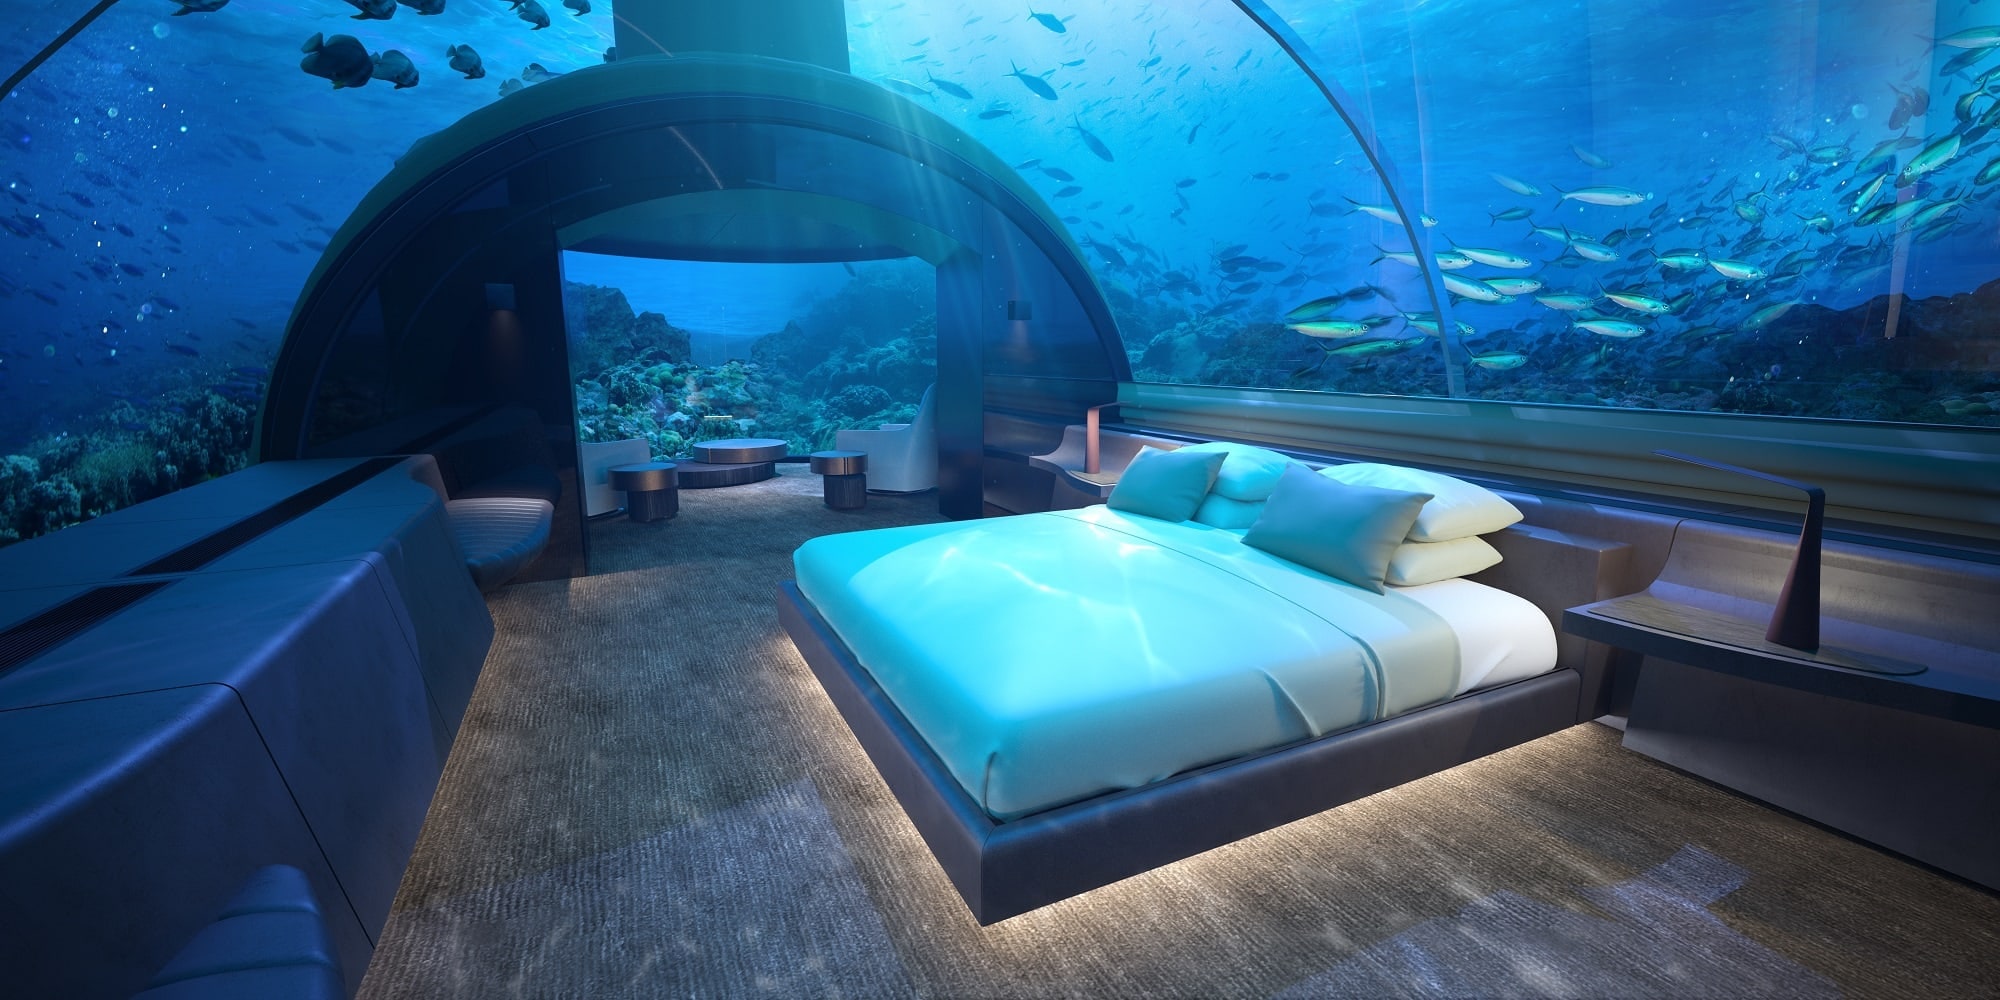 10 Best Underwater Hotels in the World (2020) | ADVENTURESOME